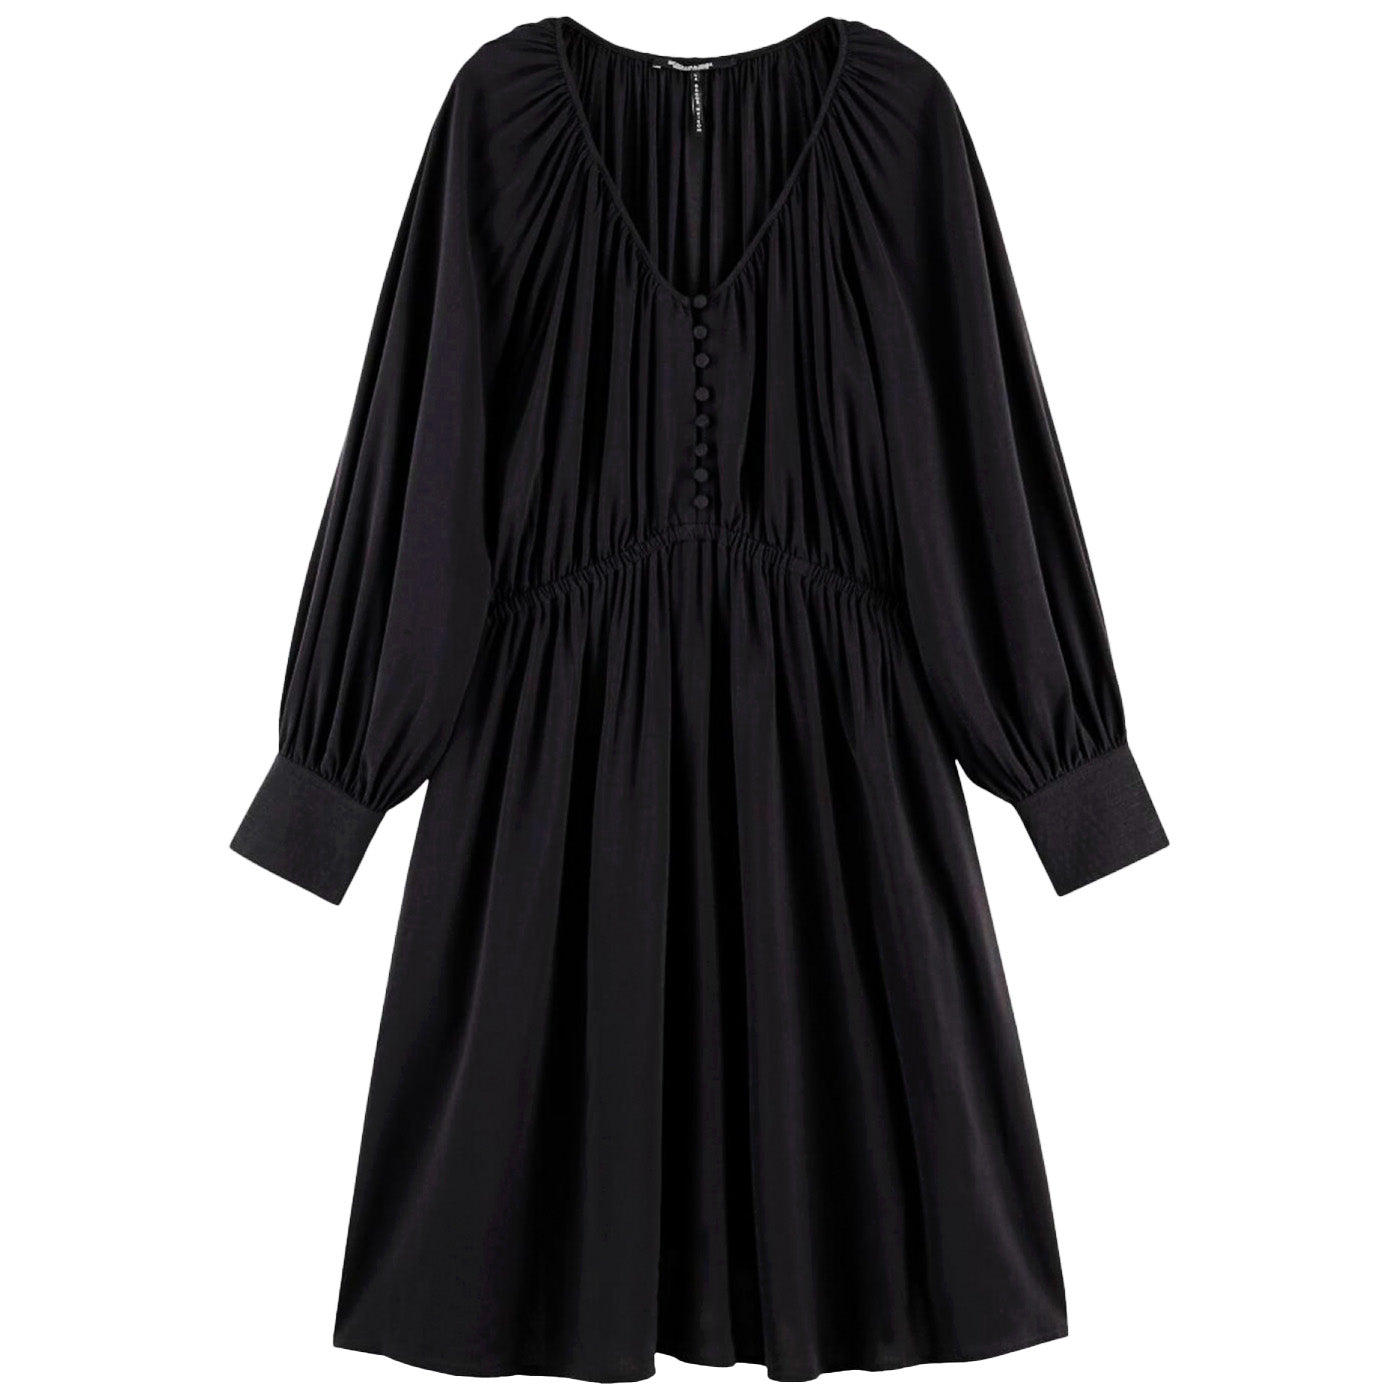 Дамска черна рокля SCOTCH&SODA, широки ръкави. Широко прилягане, в размер М. 